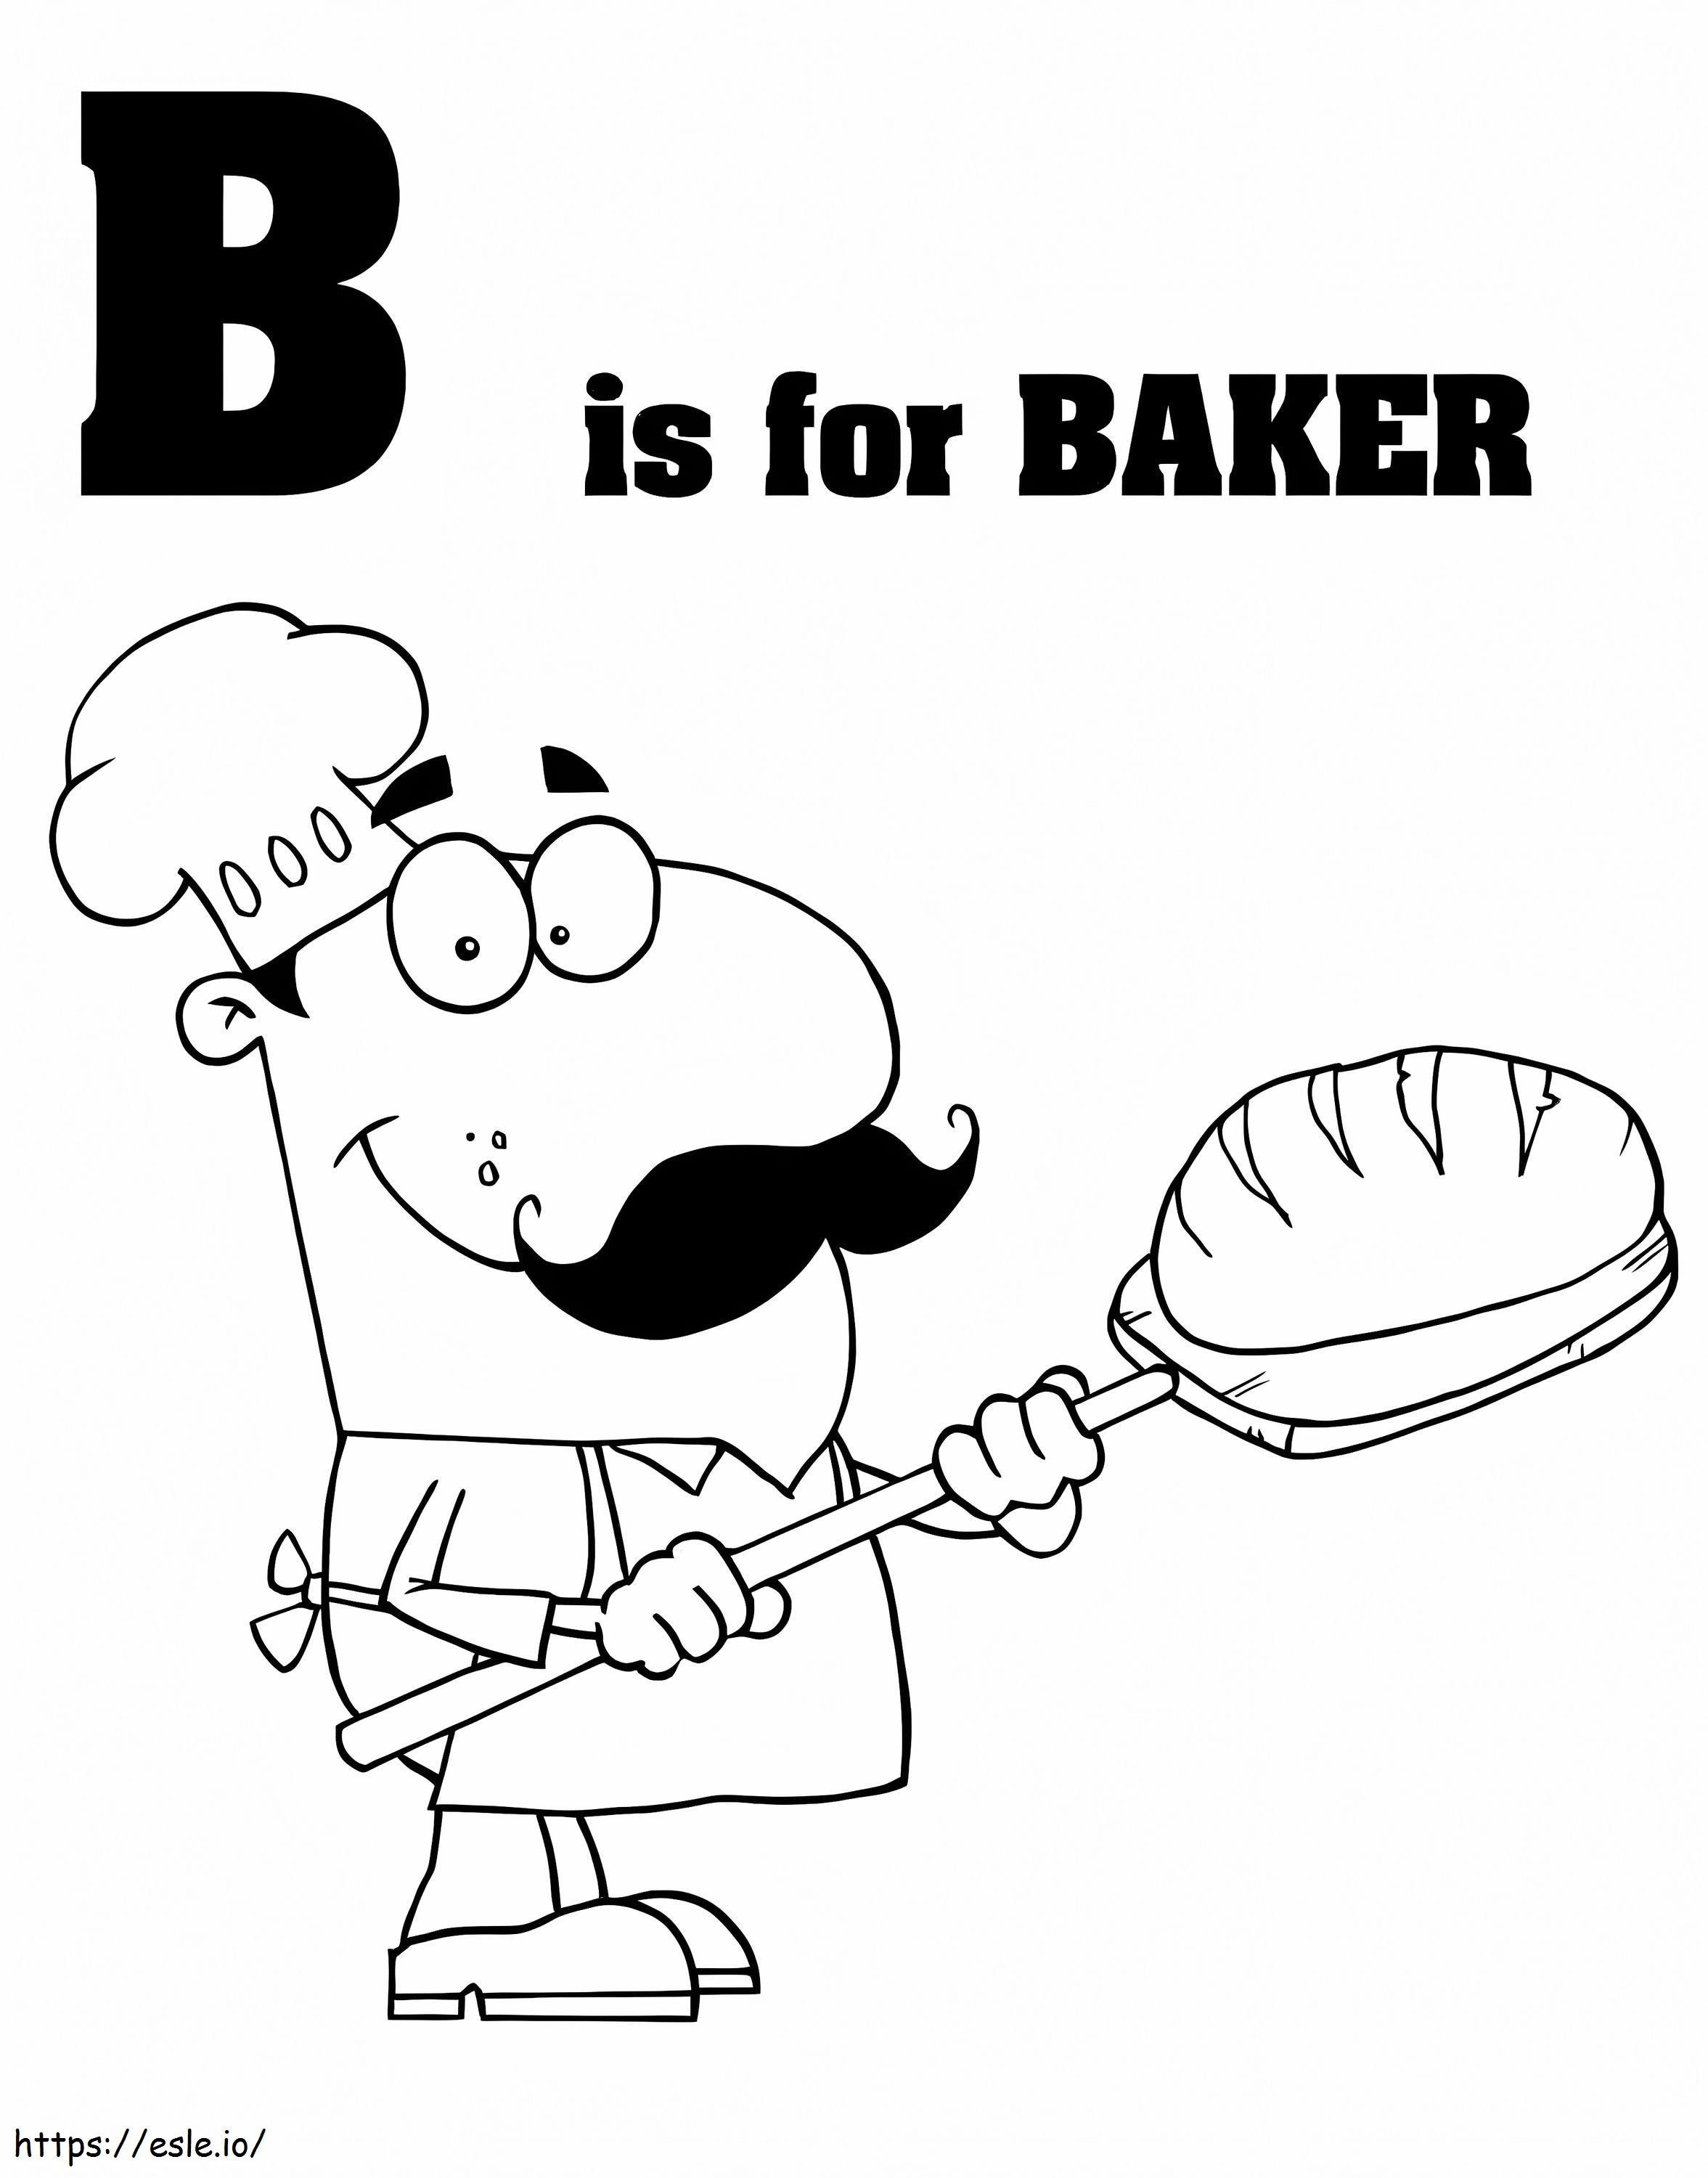 Baker litera B de colorat